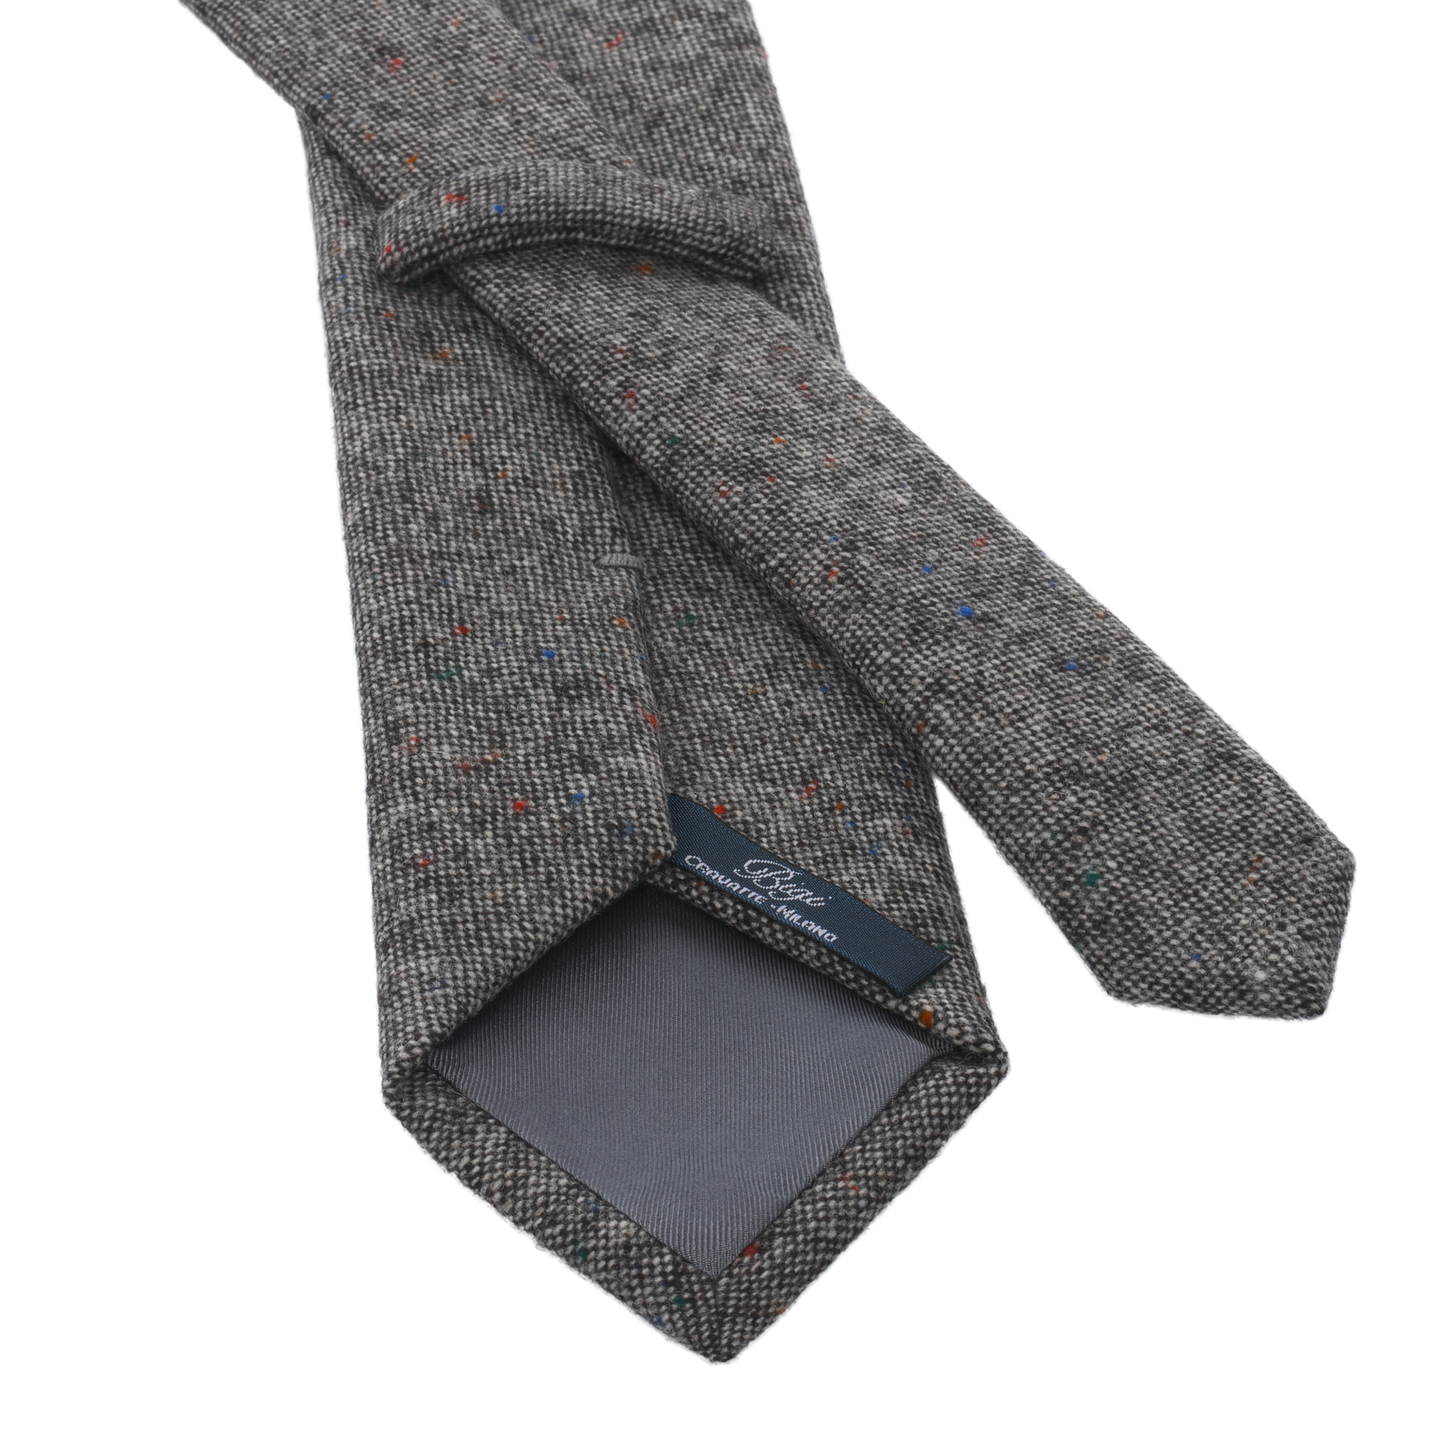 Woven Wool Polka Dot Tie in Brown Melange